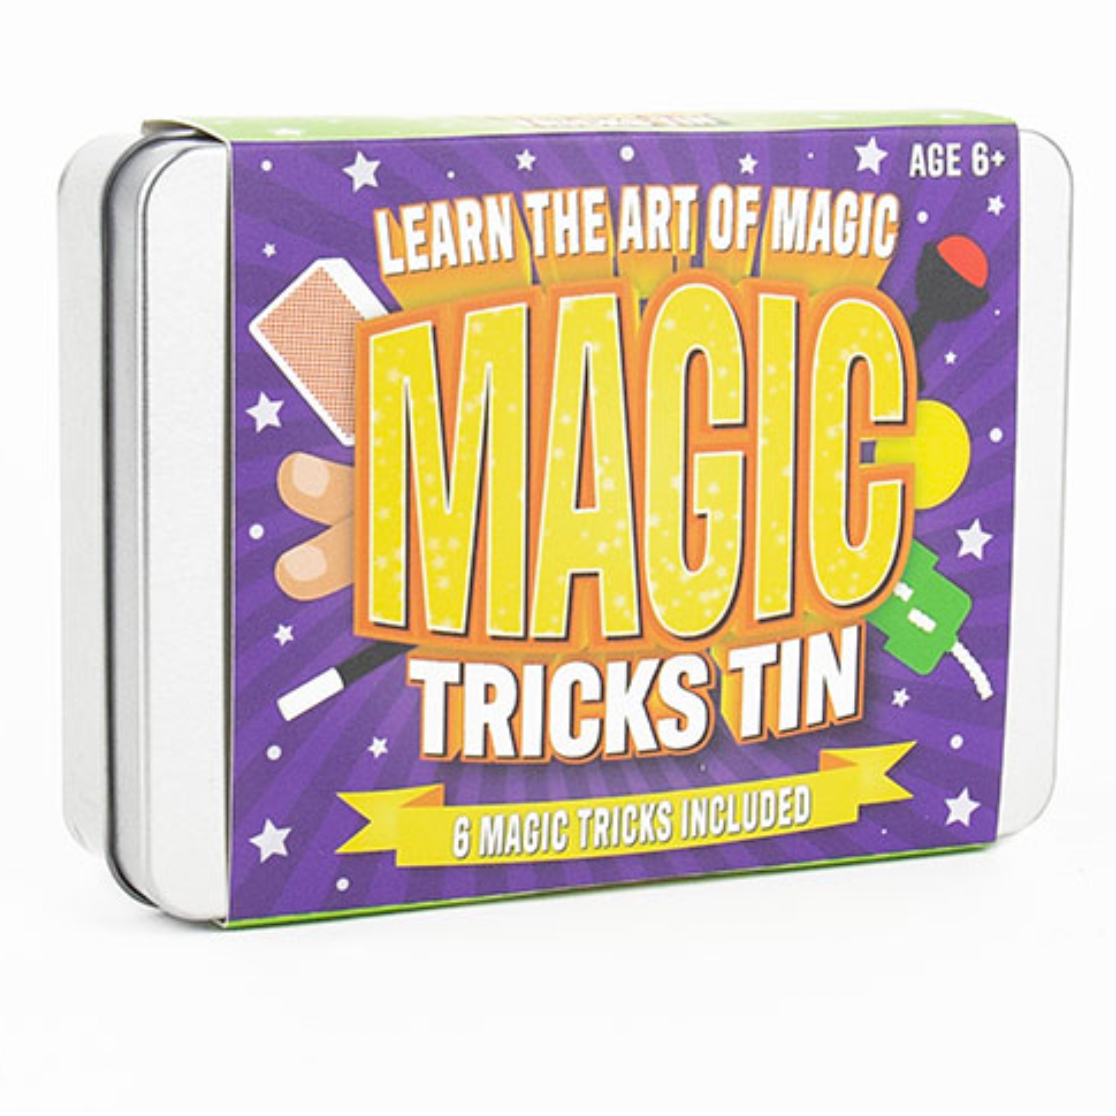 Magic Tricks Tin